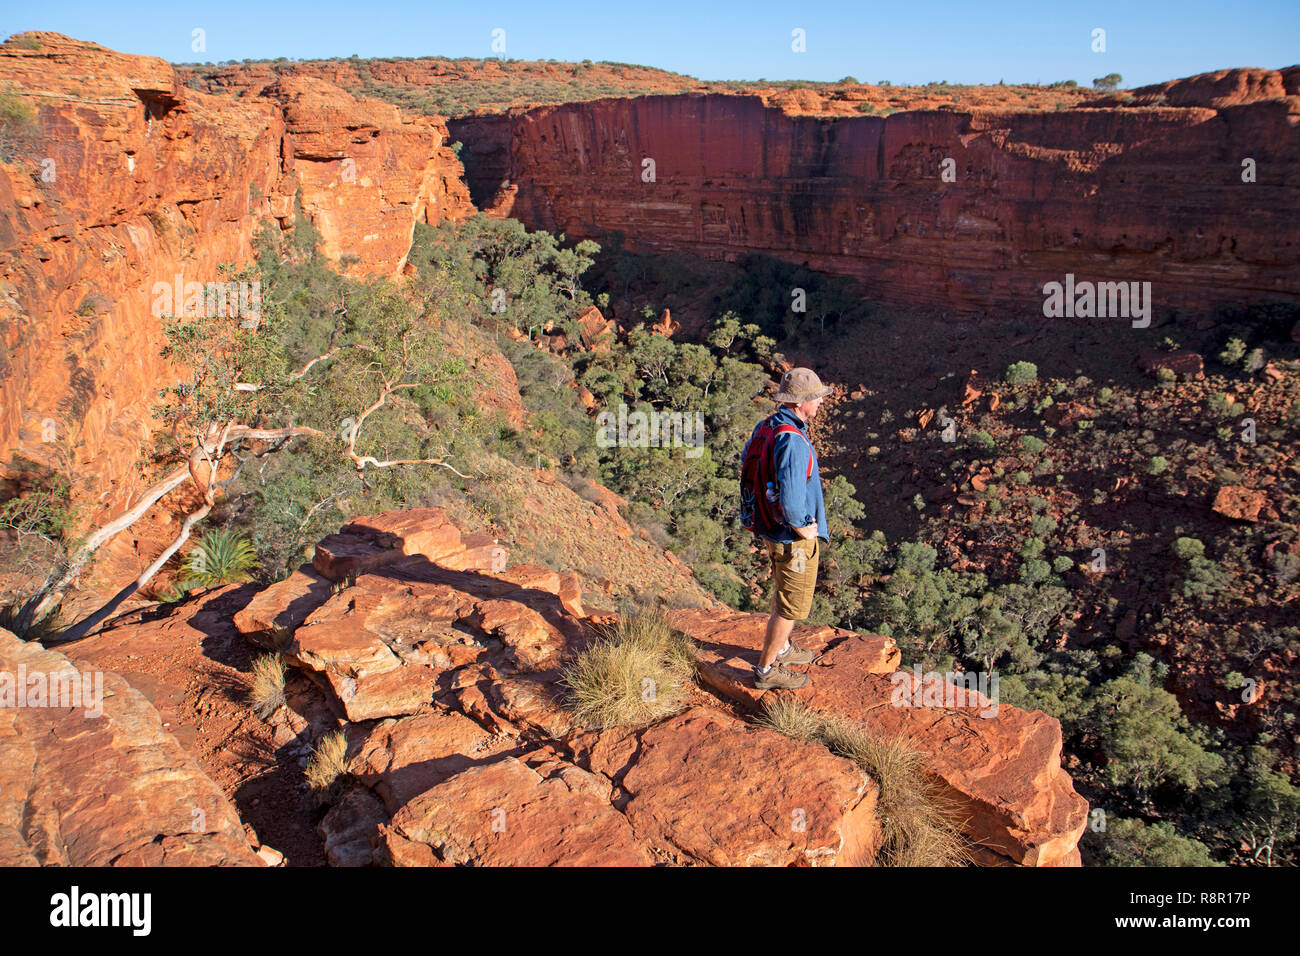 Watarrka National Park, Territoire du Nord, Australie, 20/10/2018 : Homme debout au bord de la Kings Canyon Rim, regardant vers le bas dans le canyon Banque D'Images